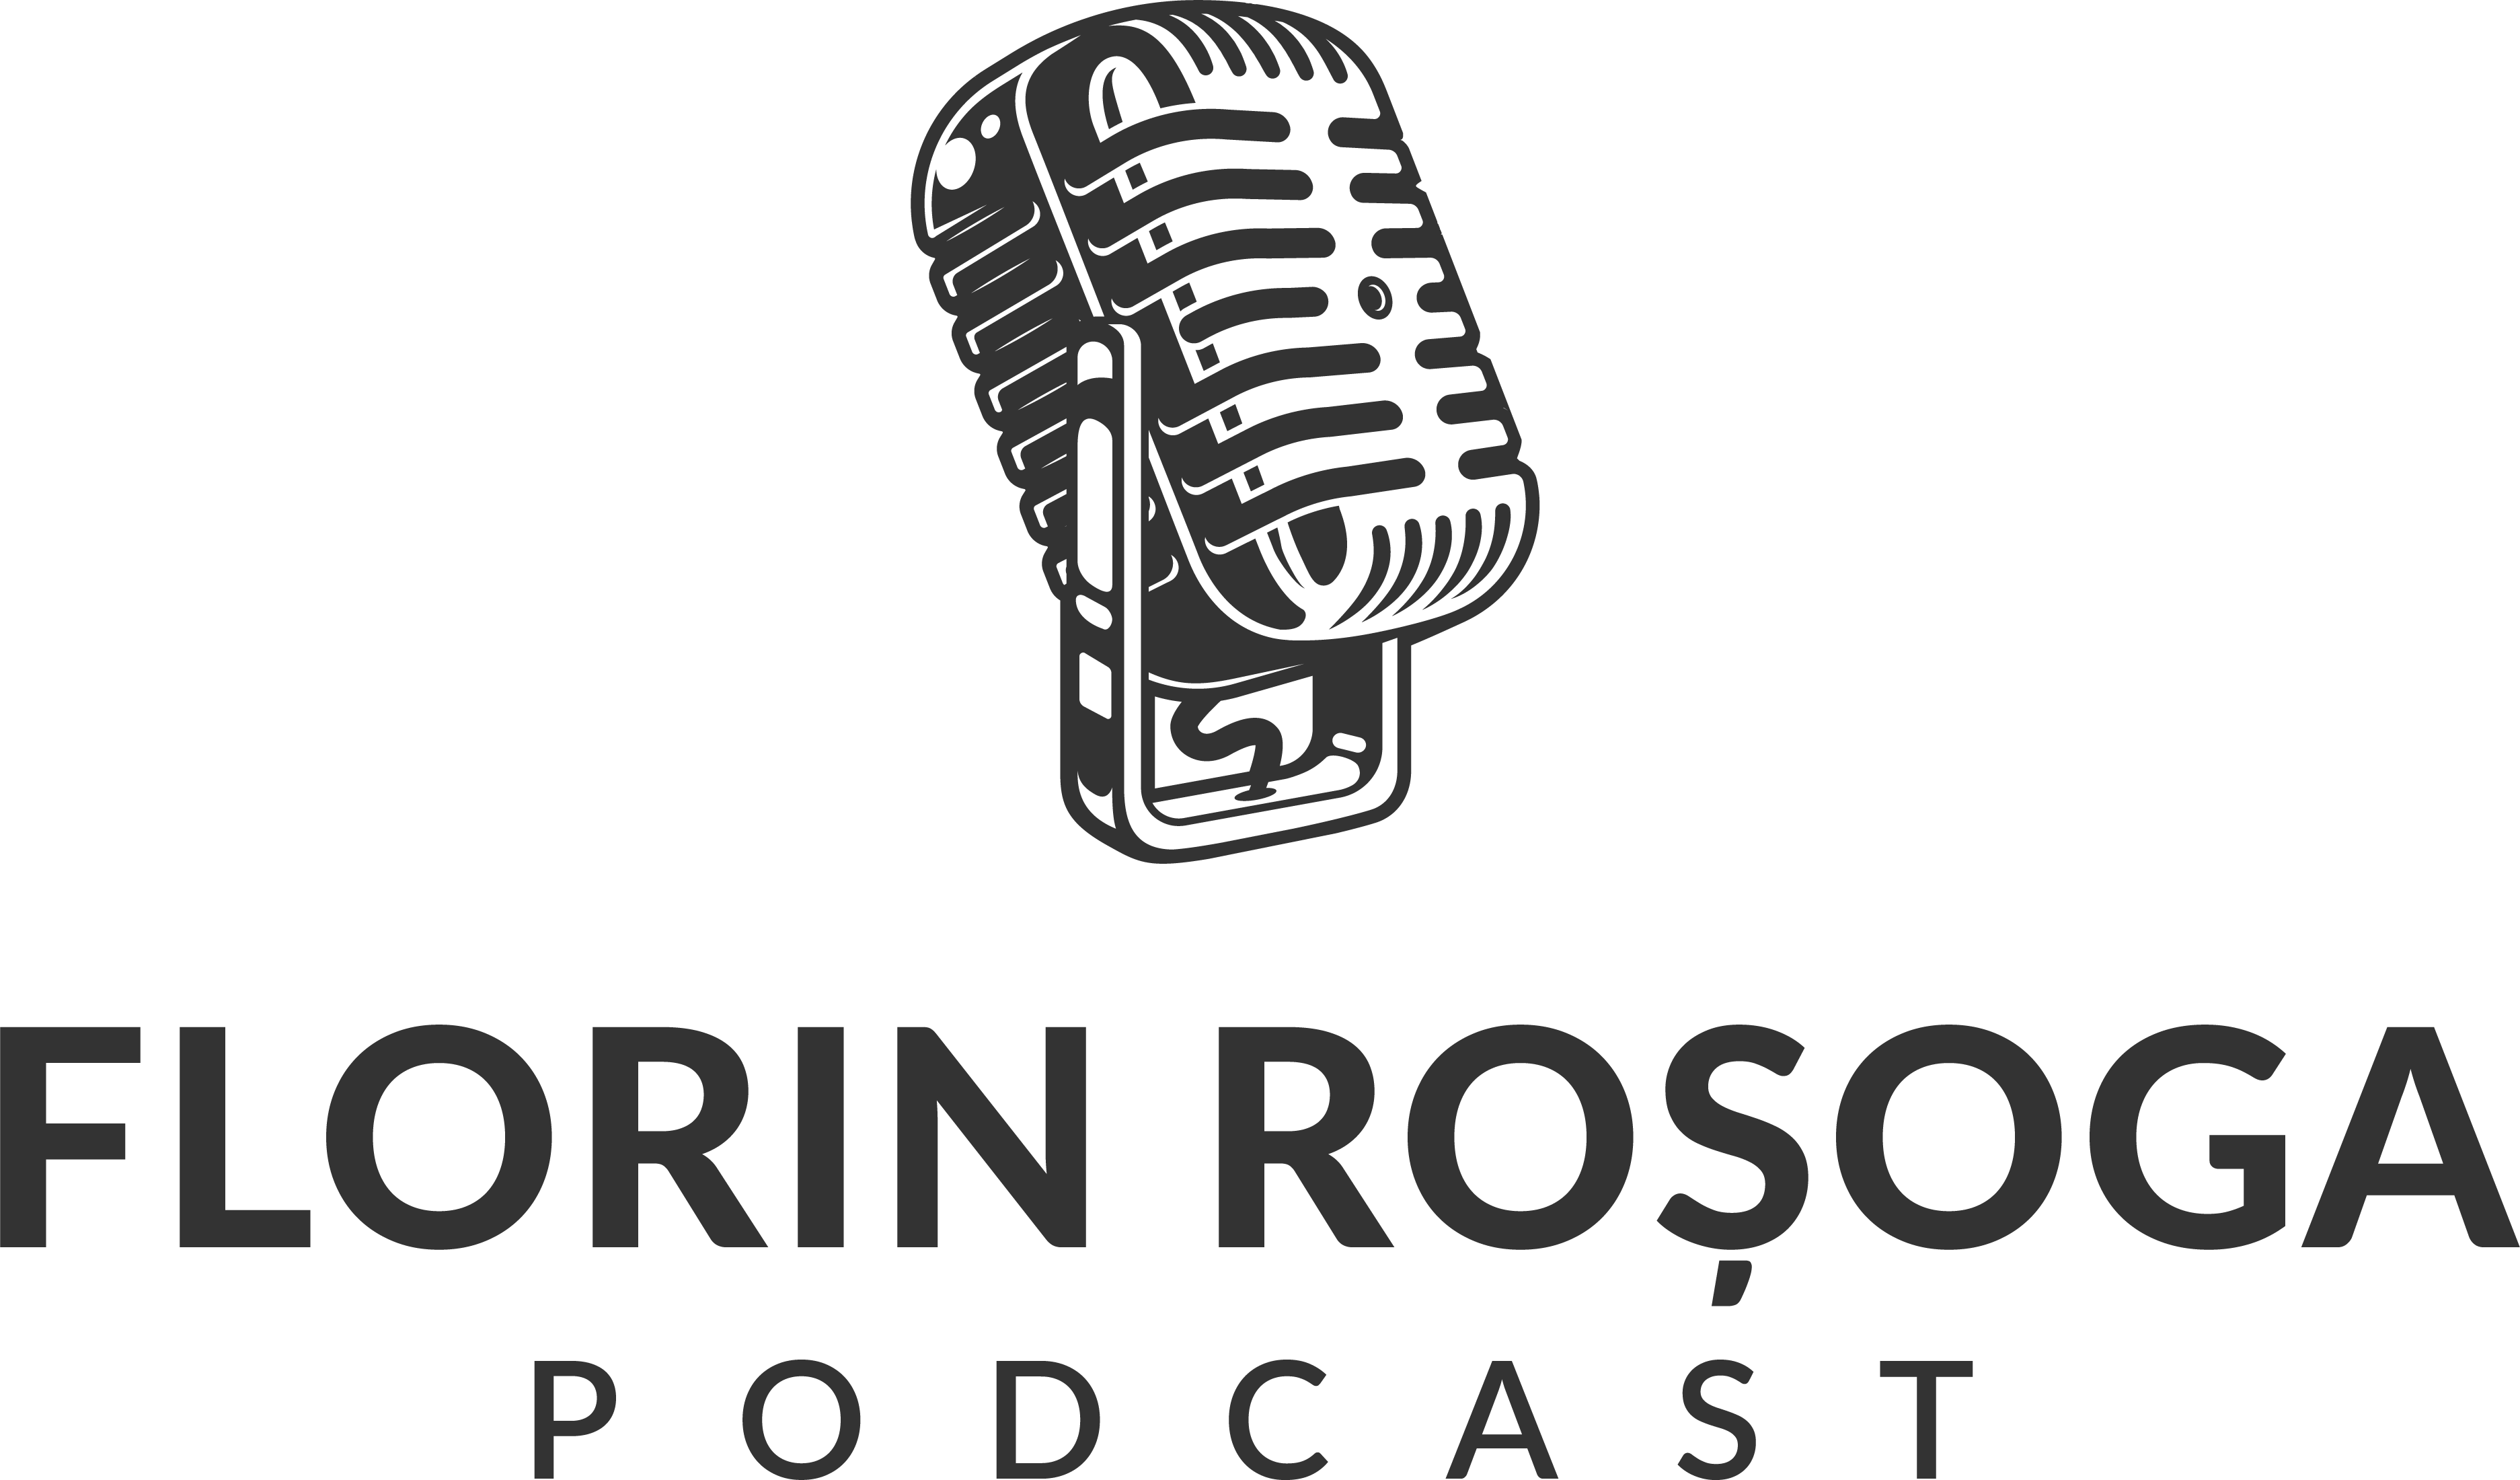 Florin Rosoga Podcast logo